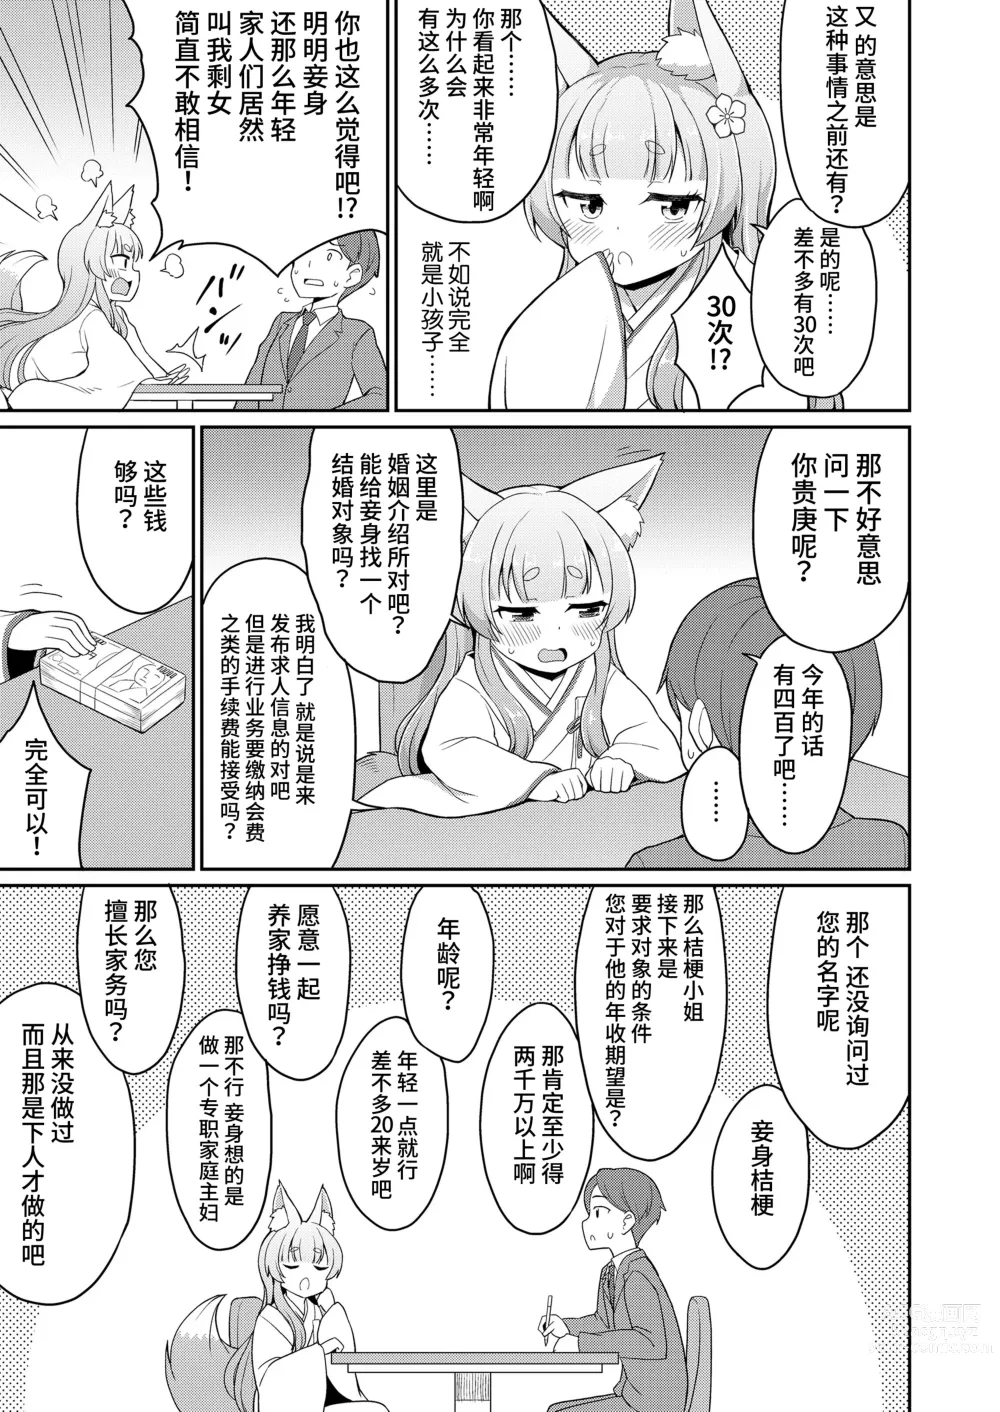 Page 3 of manga 婚活 1-2